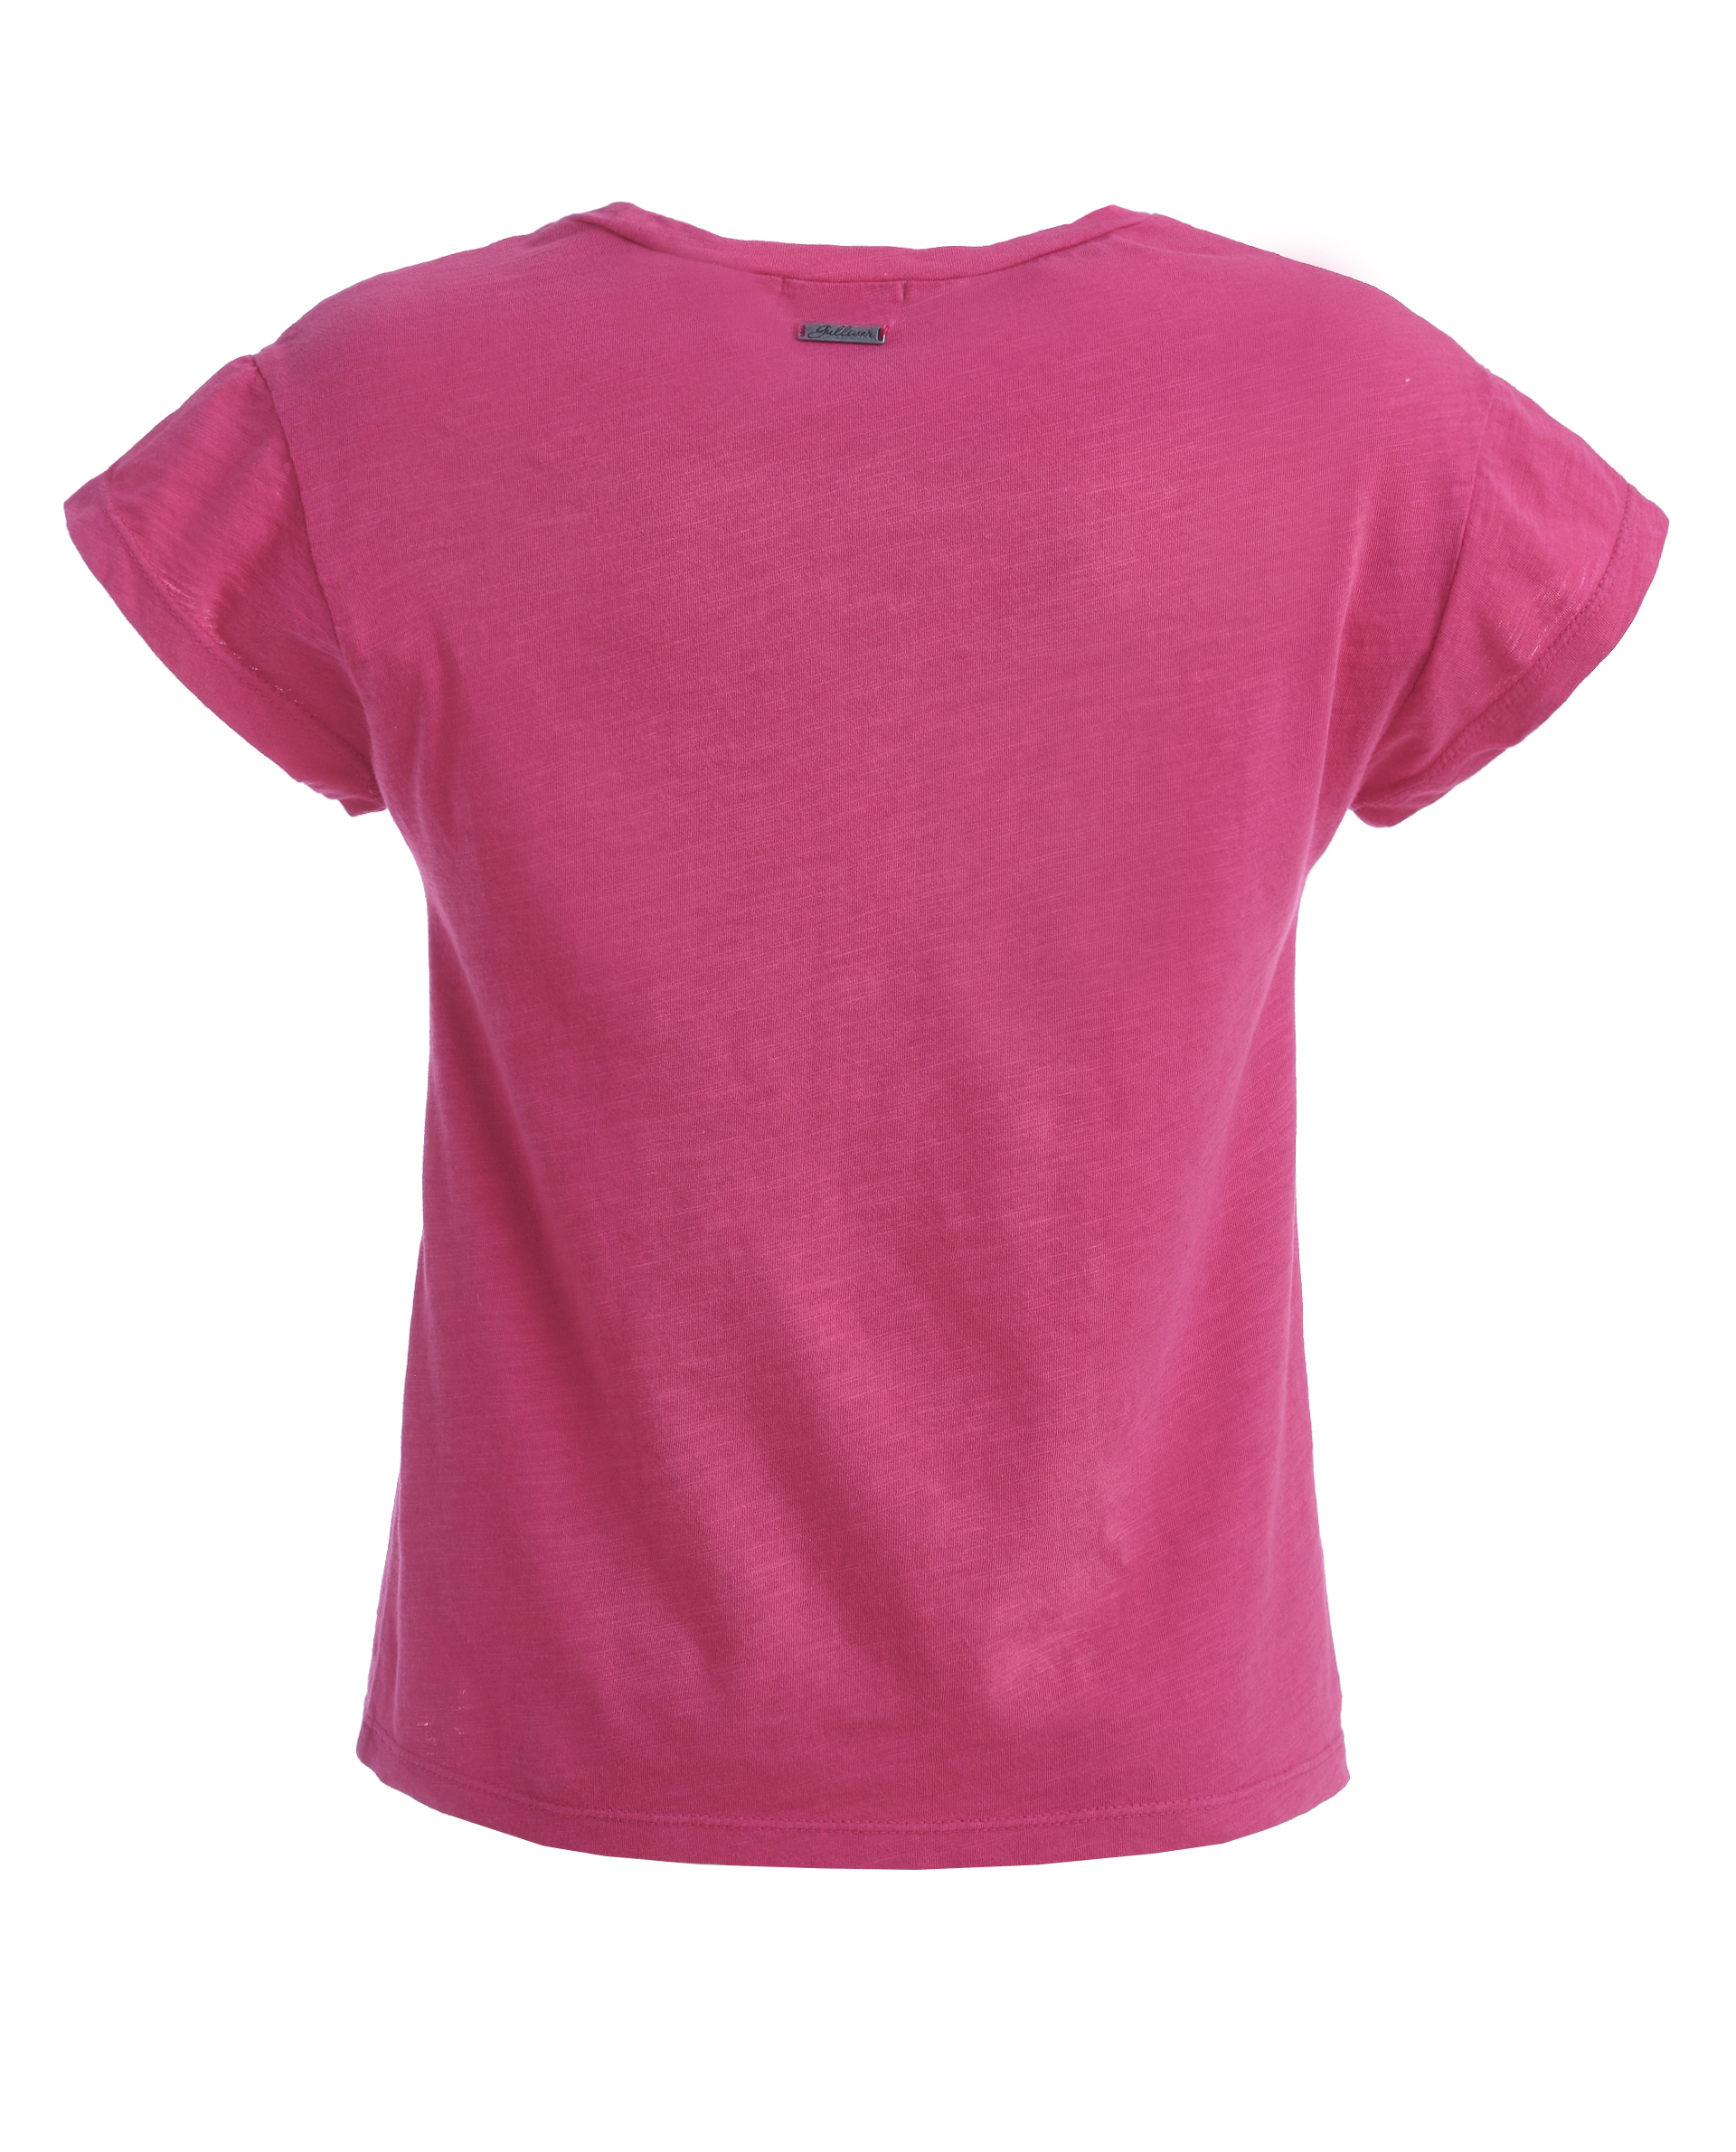 Розовая футболка, декорированная цветами Gulliver 11902GMC1209, размер 98 - фото 3